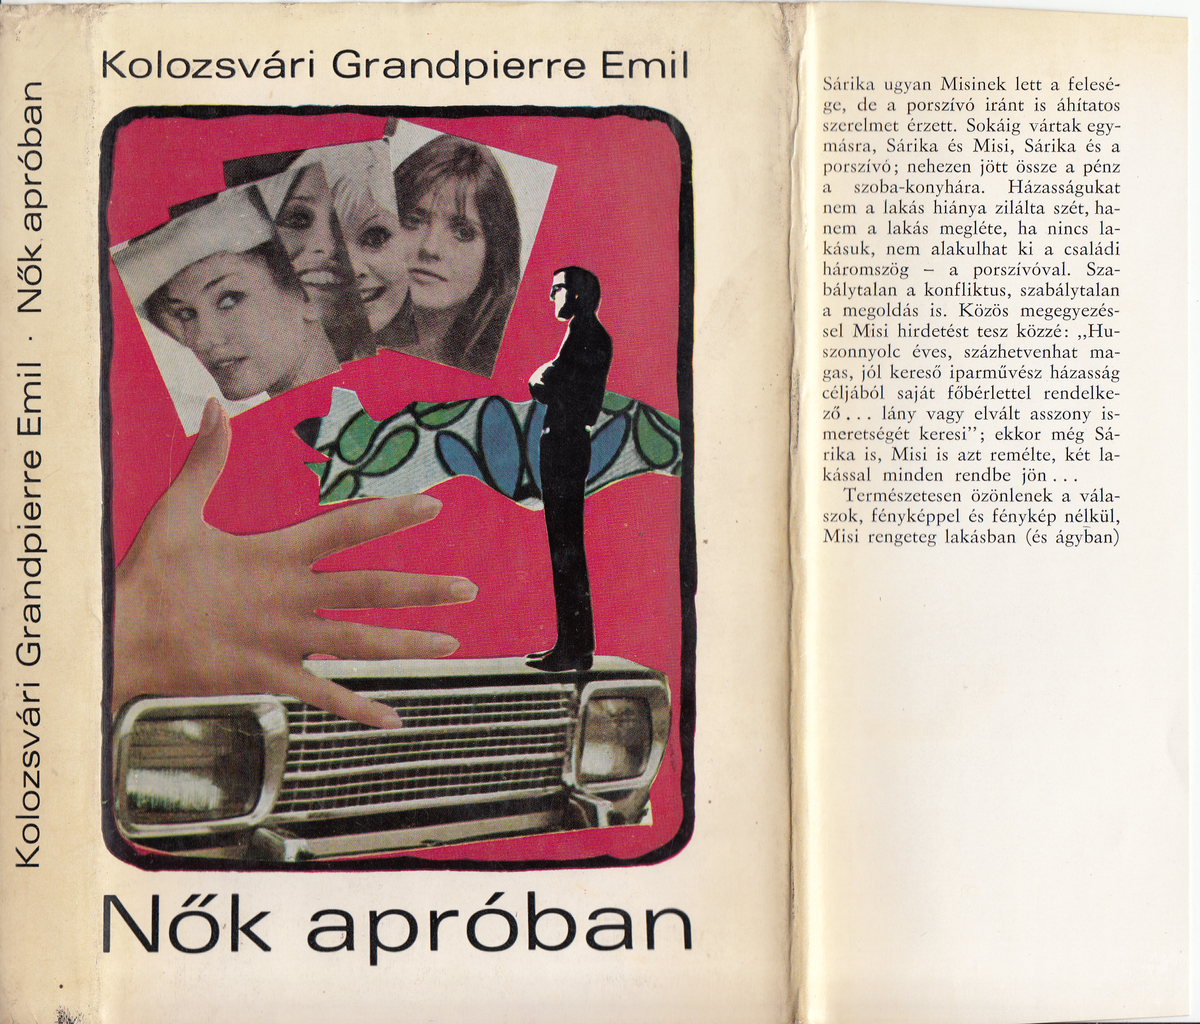 Kolozsvári Grandpierre Emil: Nők apróban, Kolozsvári Grandpierre Emil | Library OPAC